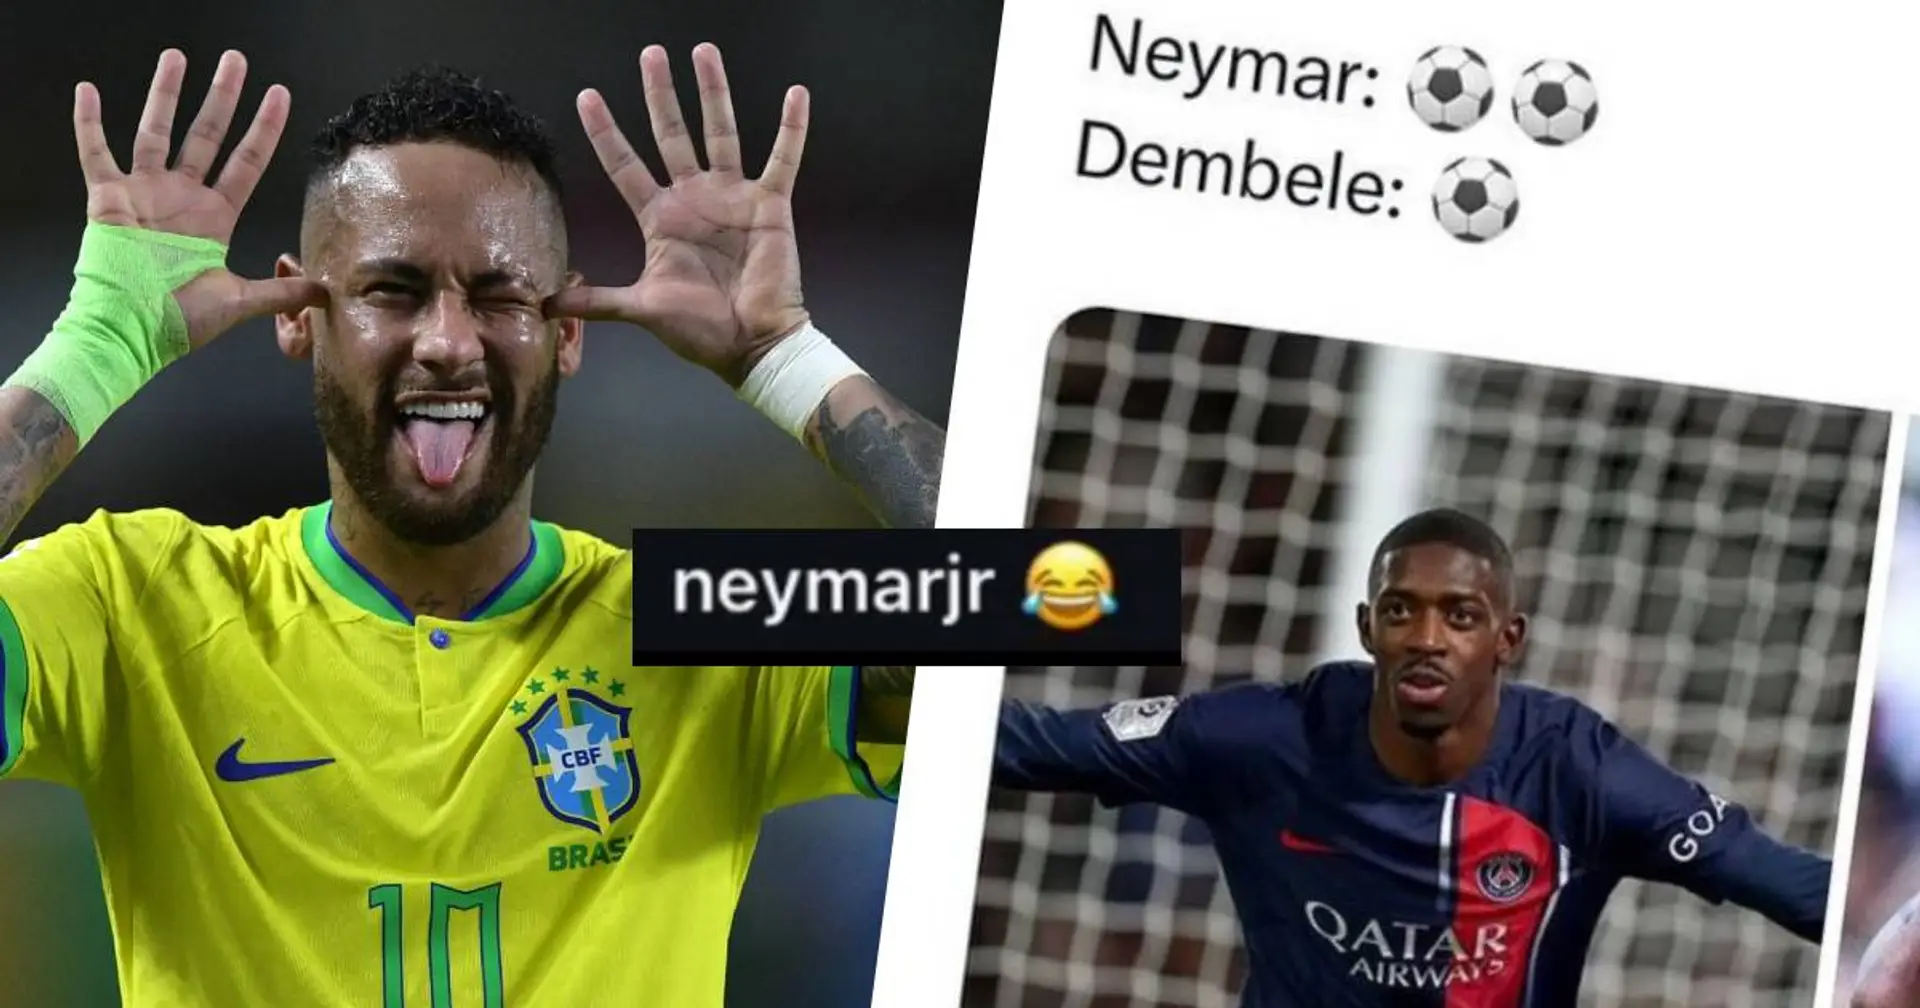 "😂" Neymar commente un message dénigrant le problème de finition de Dembélé au PSG